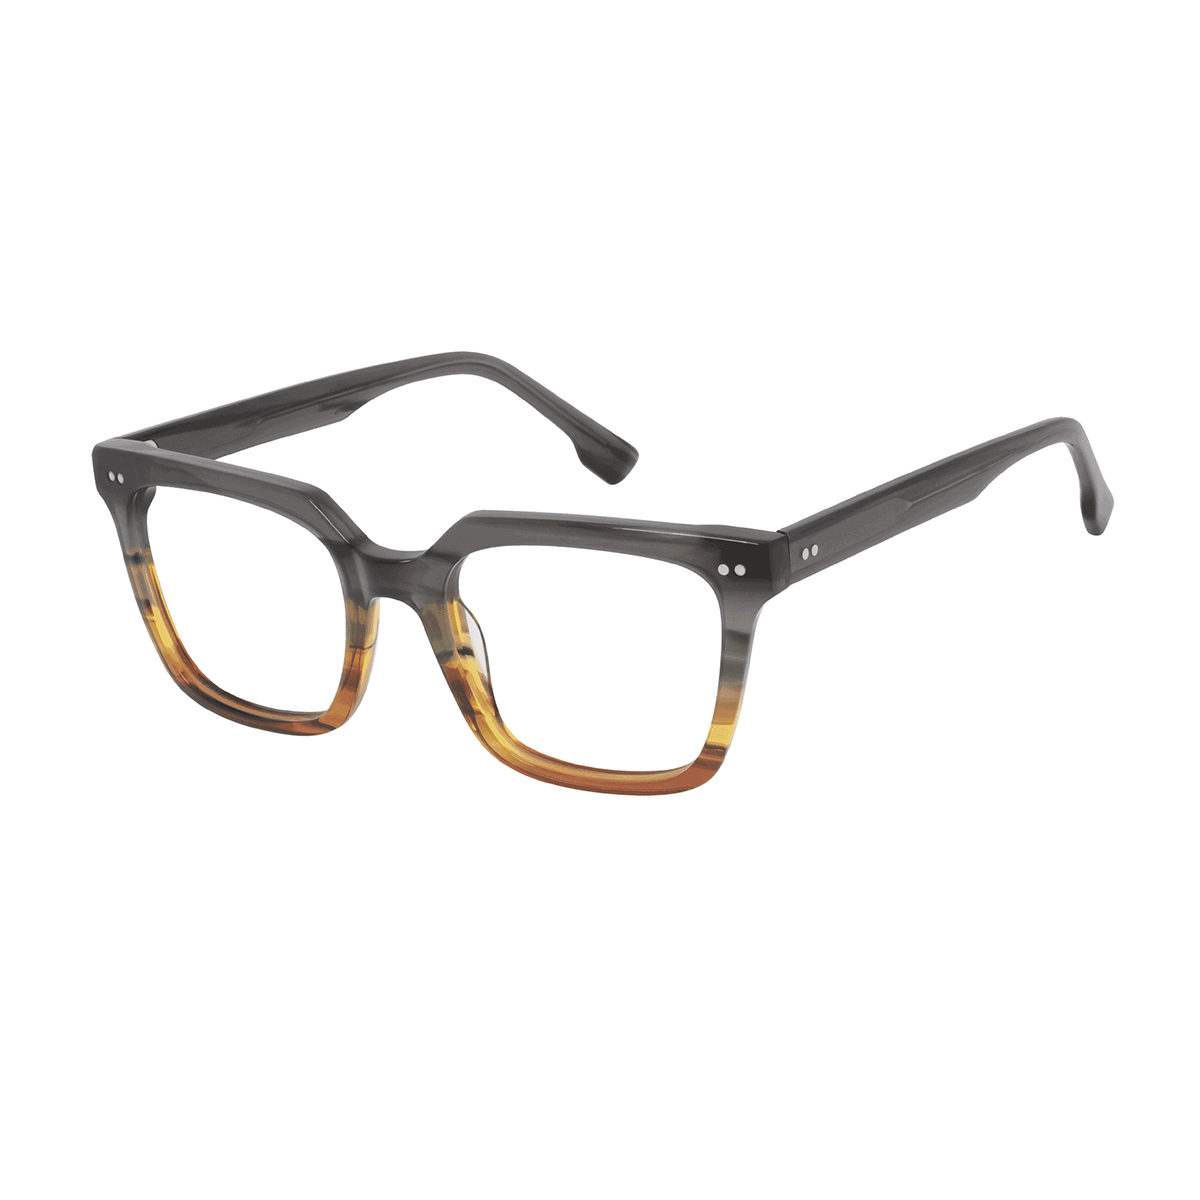 Onirii - Square Gray-Brown Reading Glasses for Men & Women